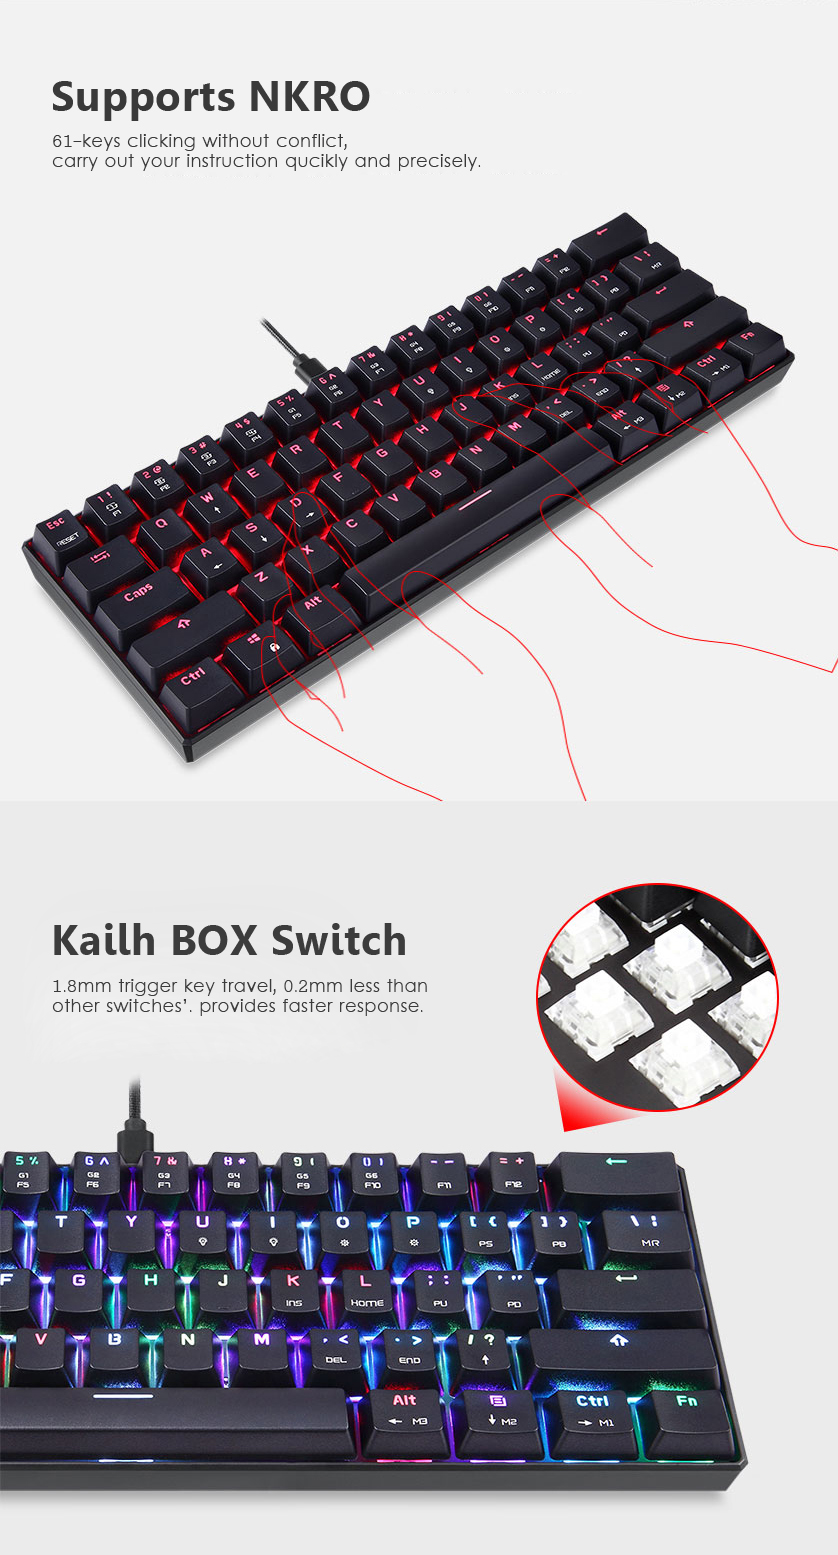 Motospeed-CK61-Kailh-BOX-Switch-Detachable-Type-C-61-Key-NKRO-RGB-Mechanical-Gaming-Keyboard-1298127